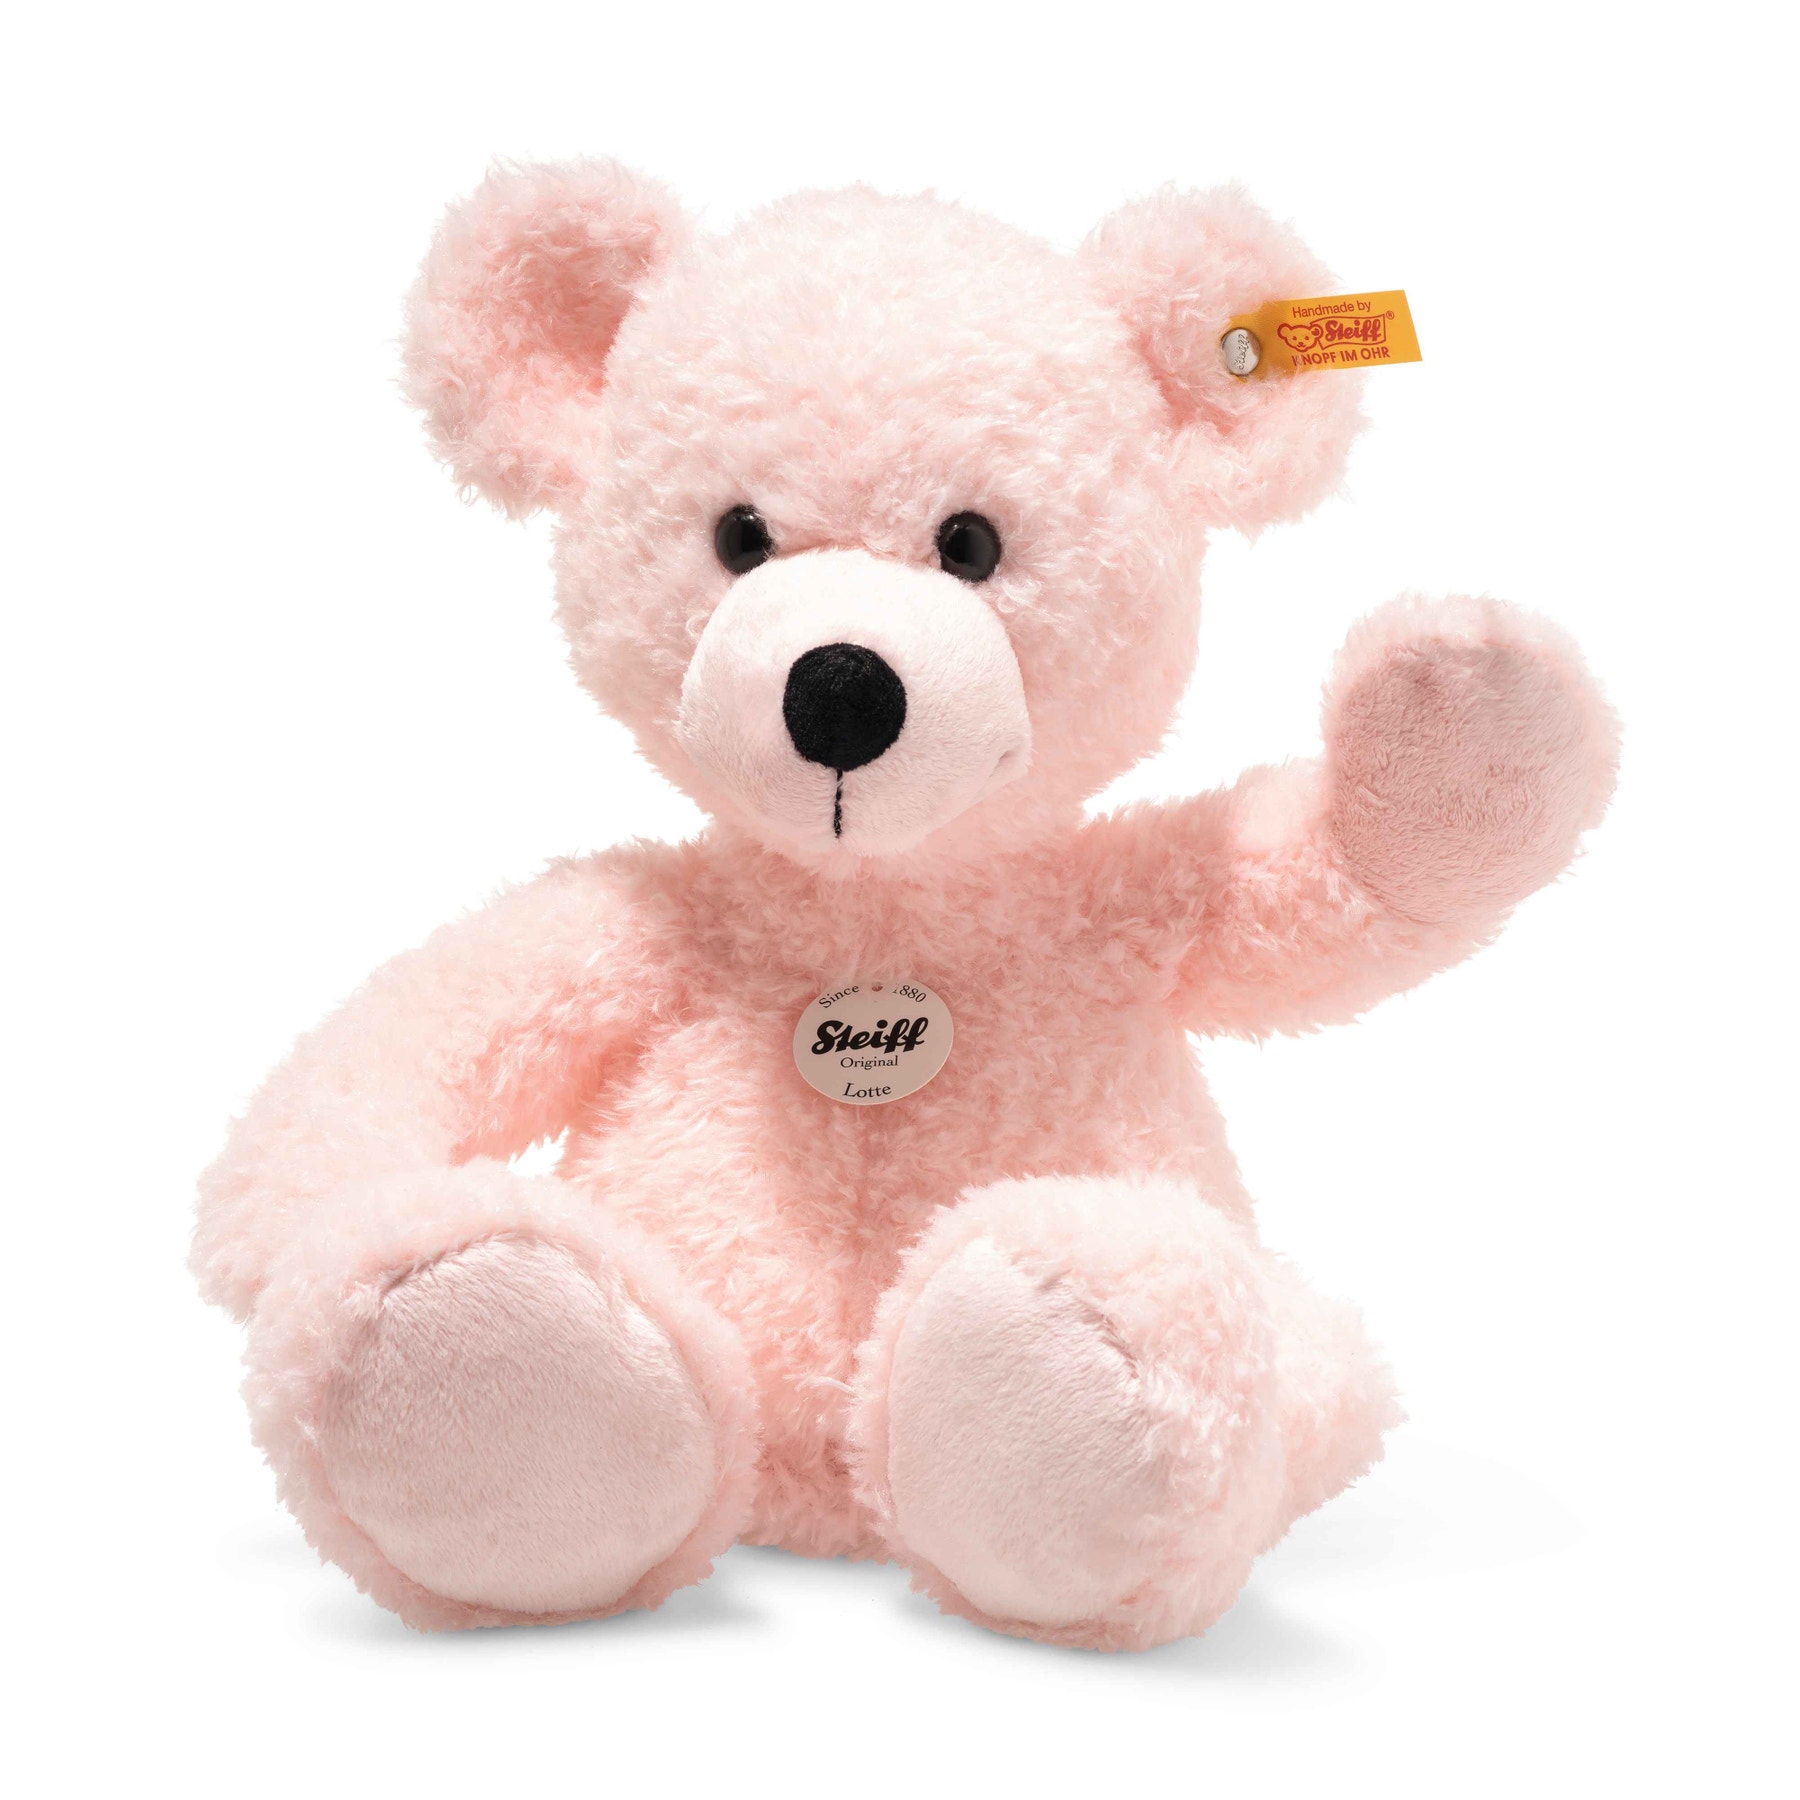 Lotte Teddy bear